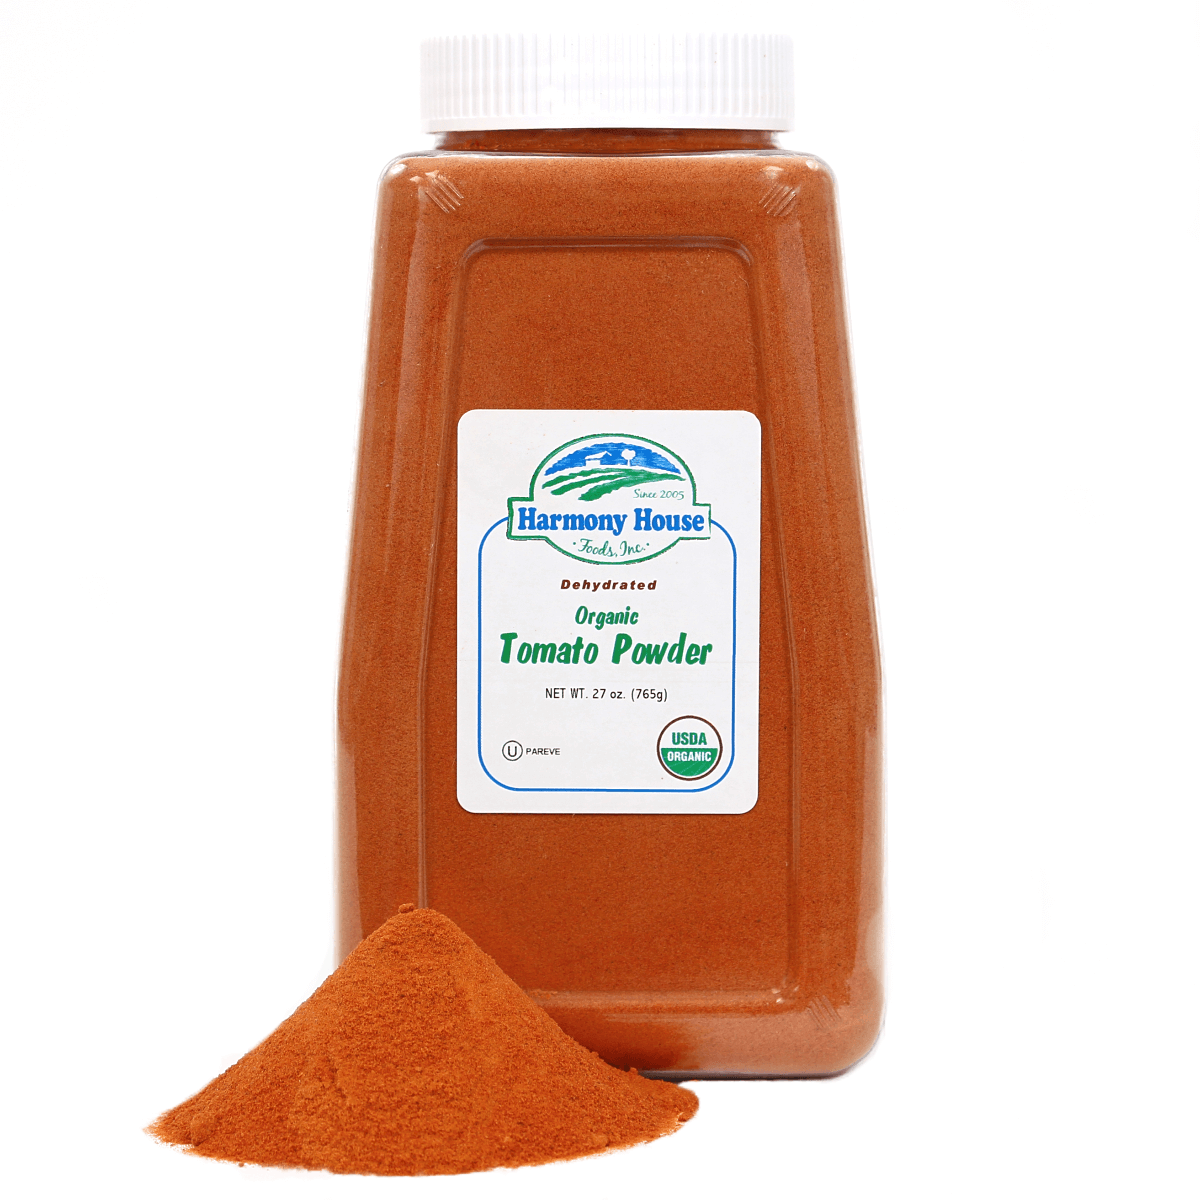 A jar of tamarind powder.